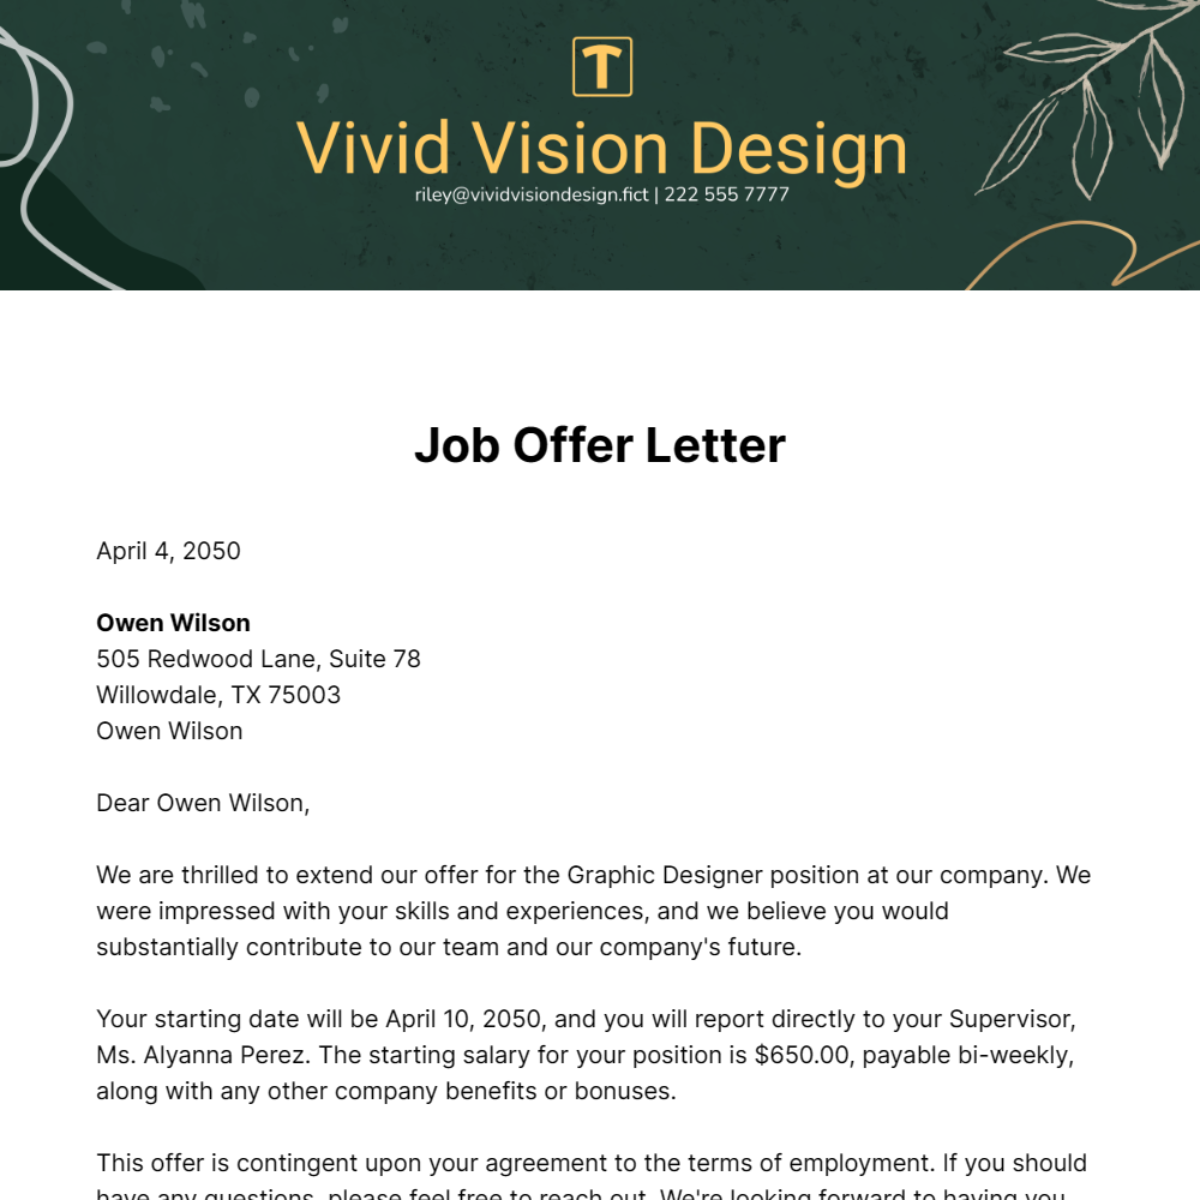 Job Offer Letter Template